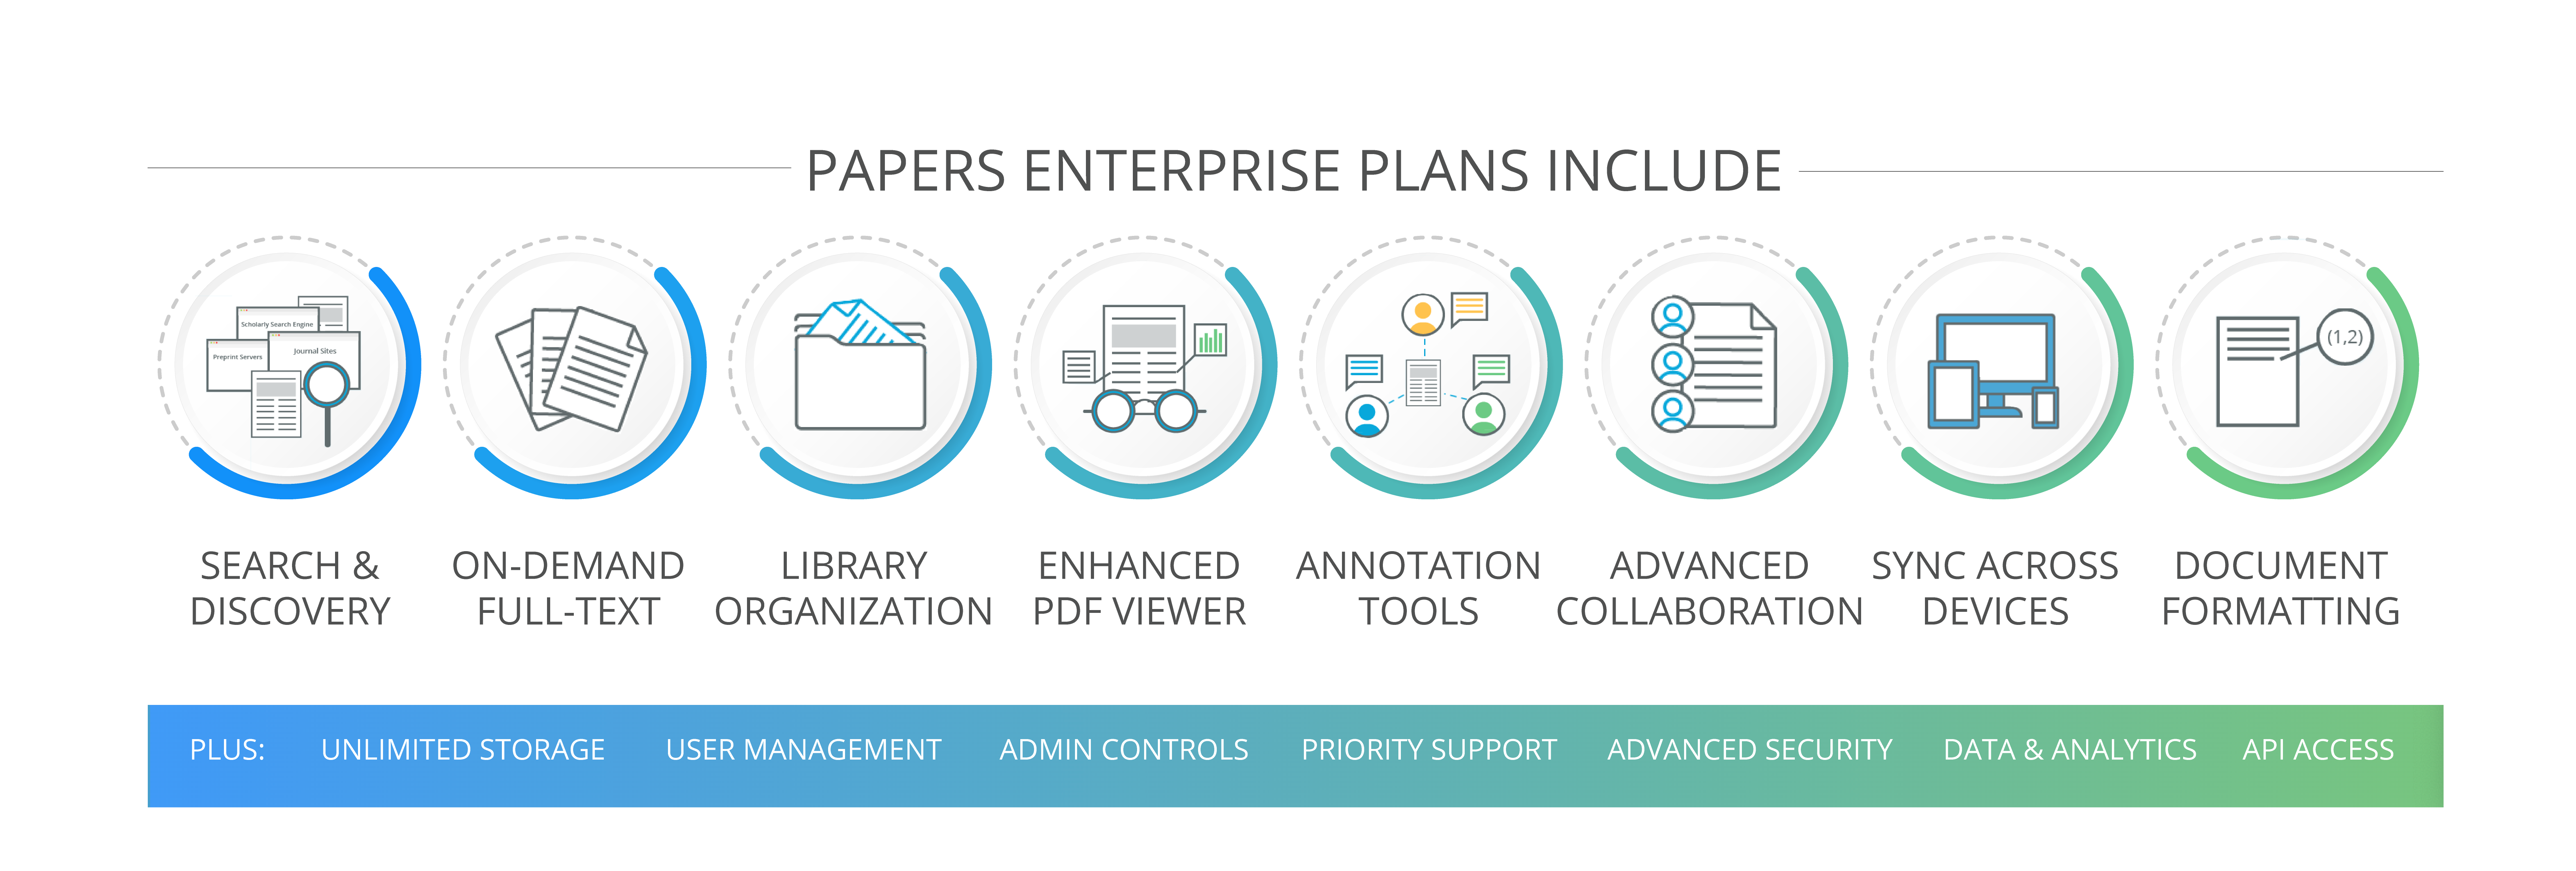 Papers Enterprise Plans Features